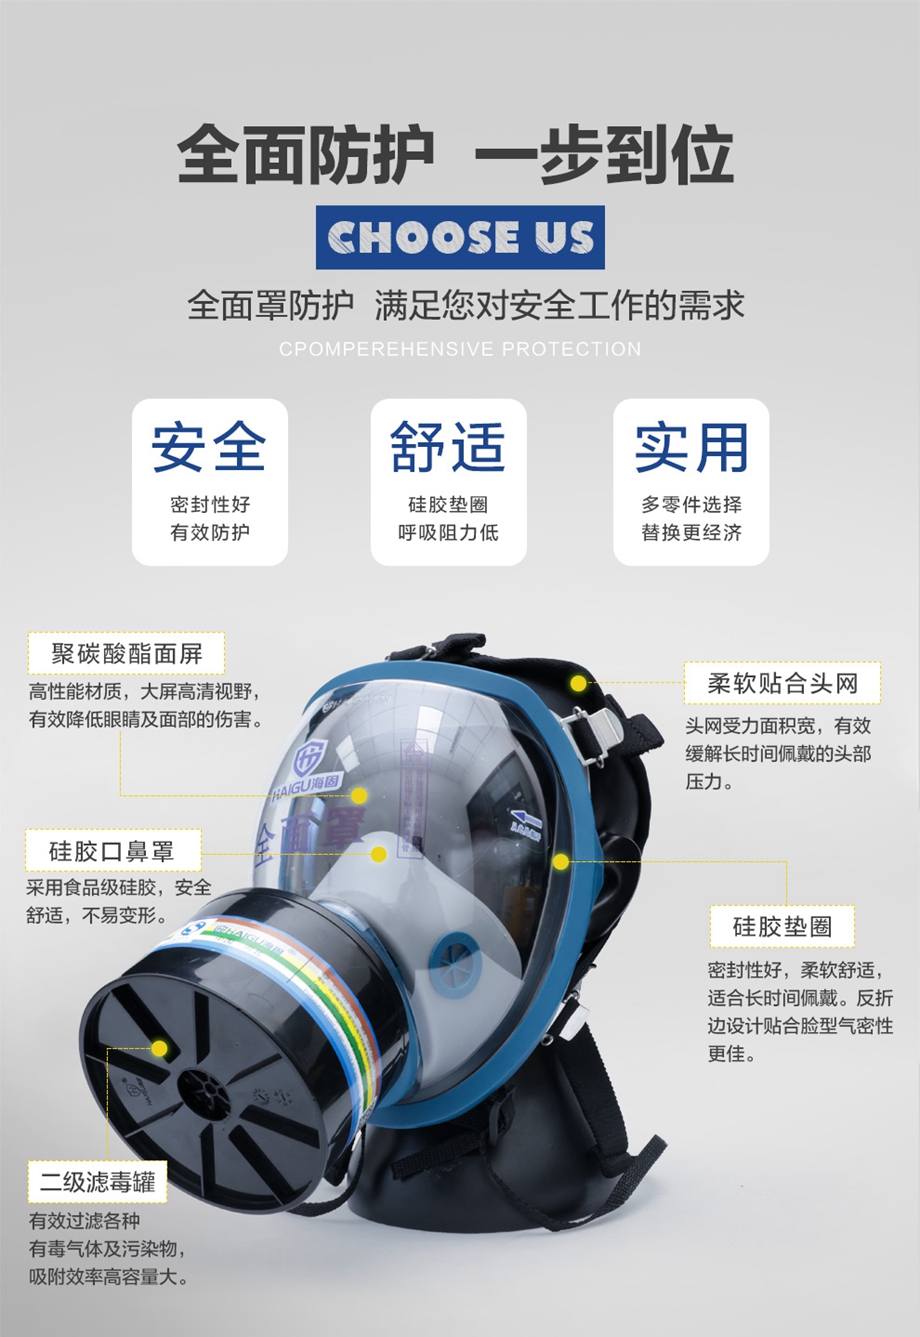 海固HG-800全面罩+D-A/B/E/K/H2S/CO-2 多功能活性炭滤毒罐 综合气体防护套装